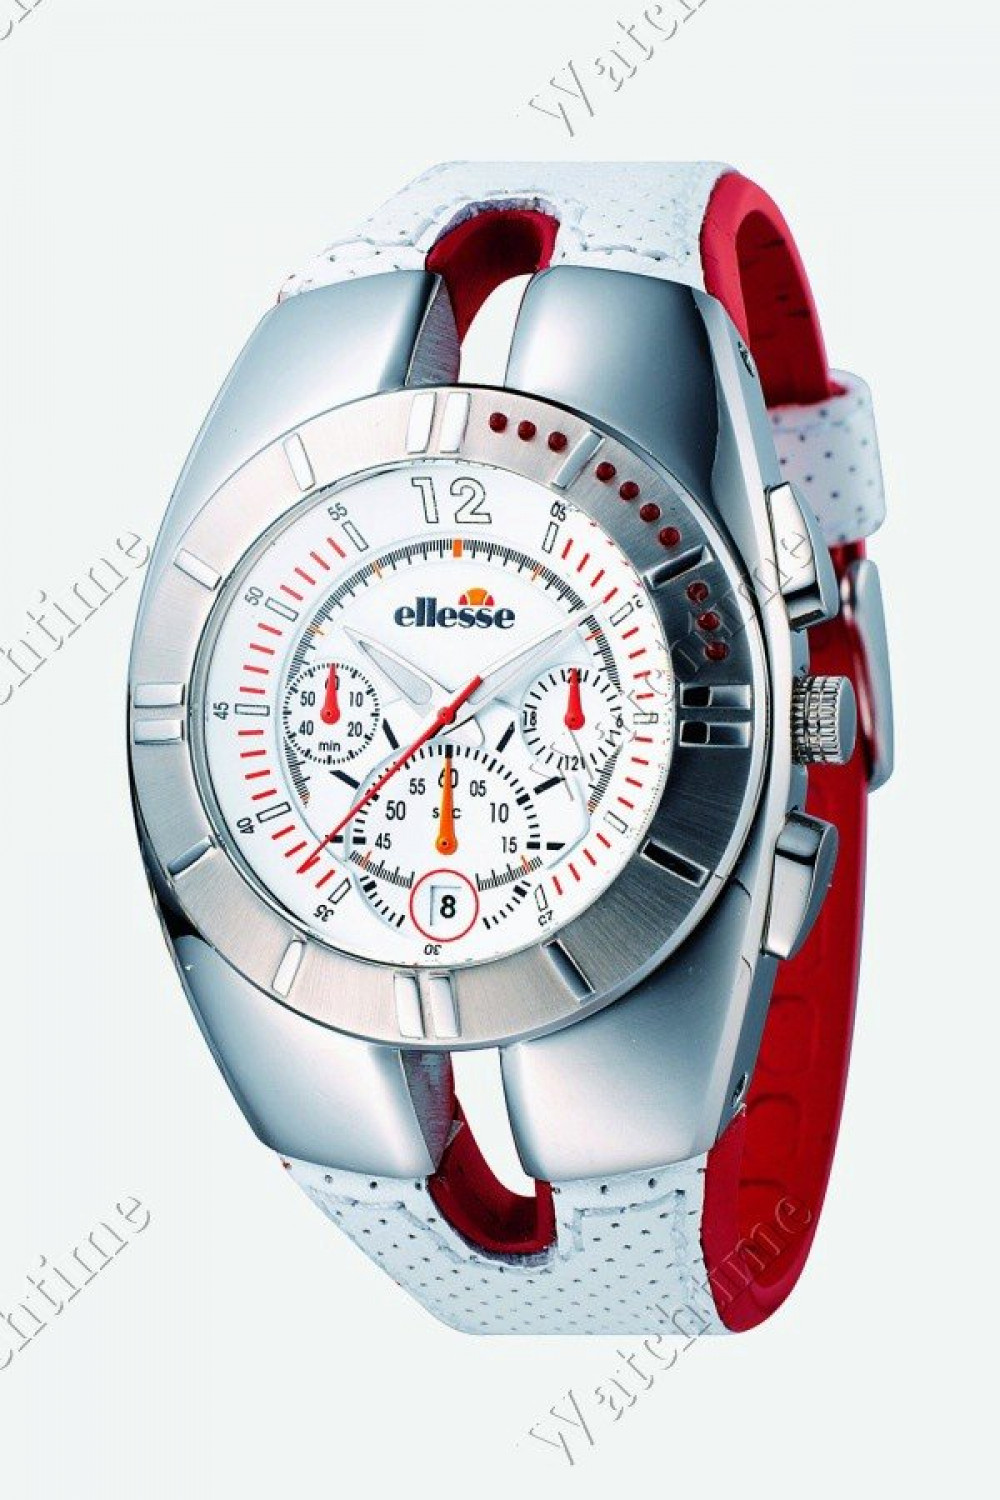 Zegarek firmy Ellesse, model Sportivo